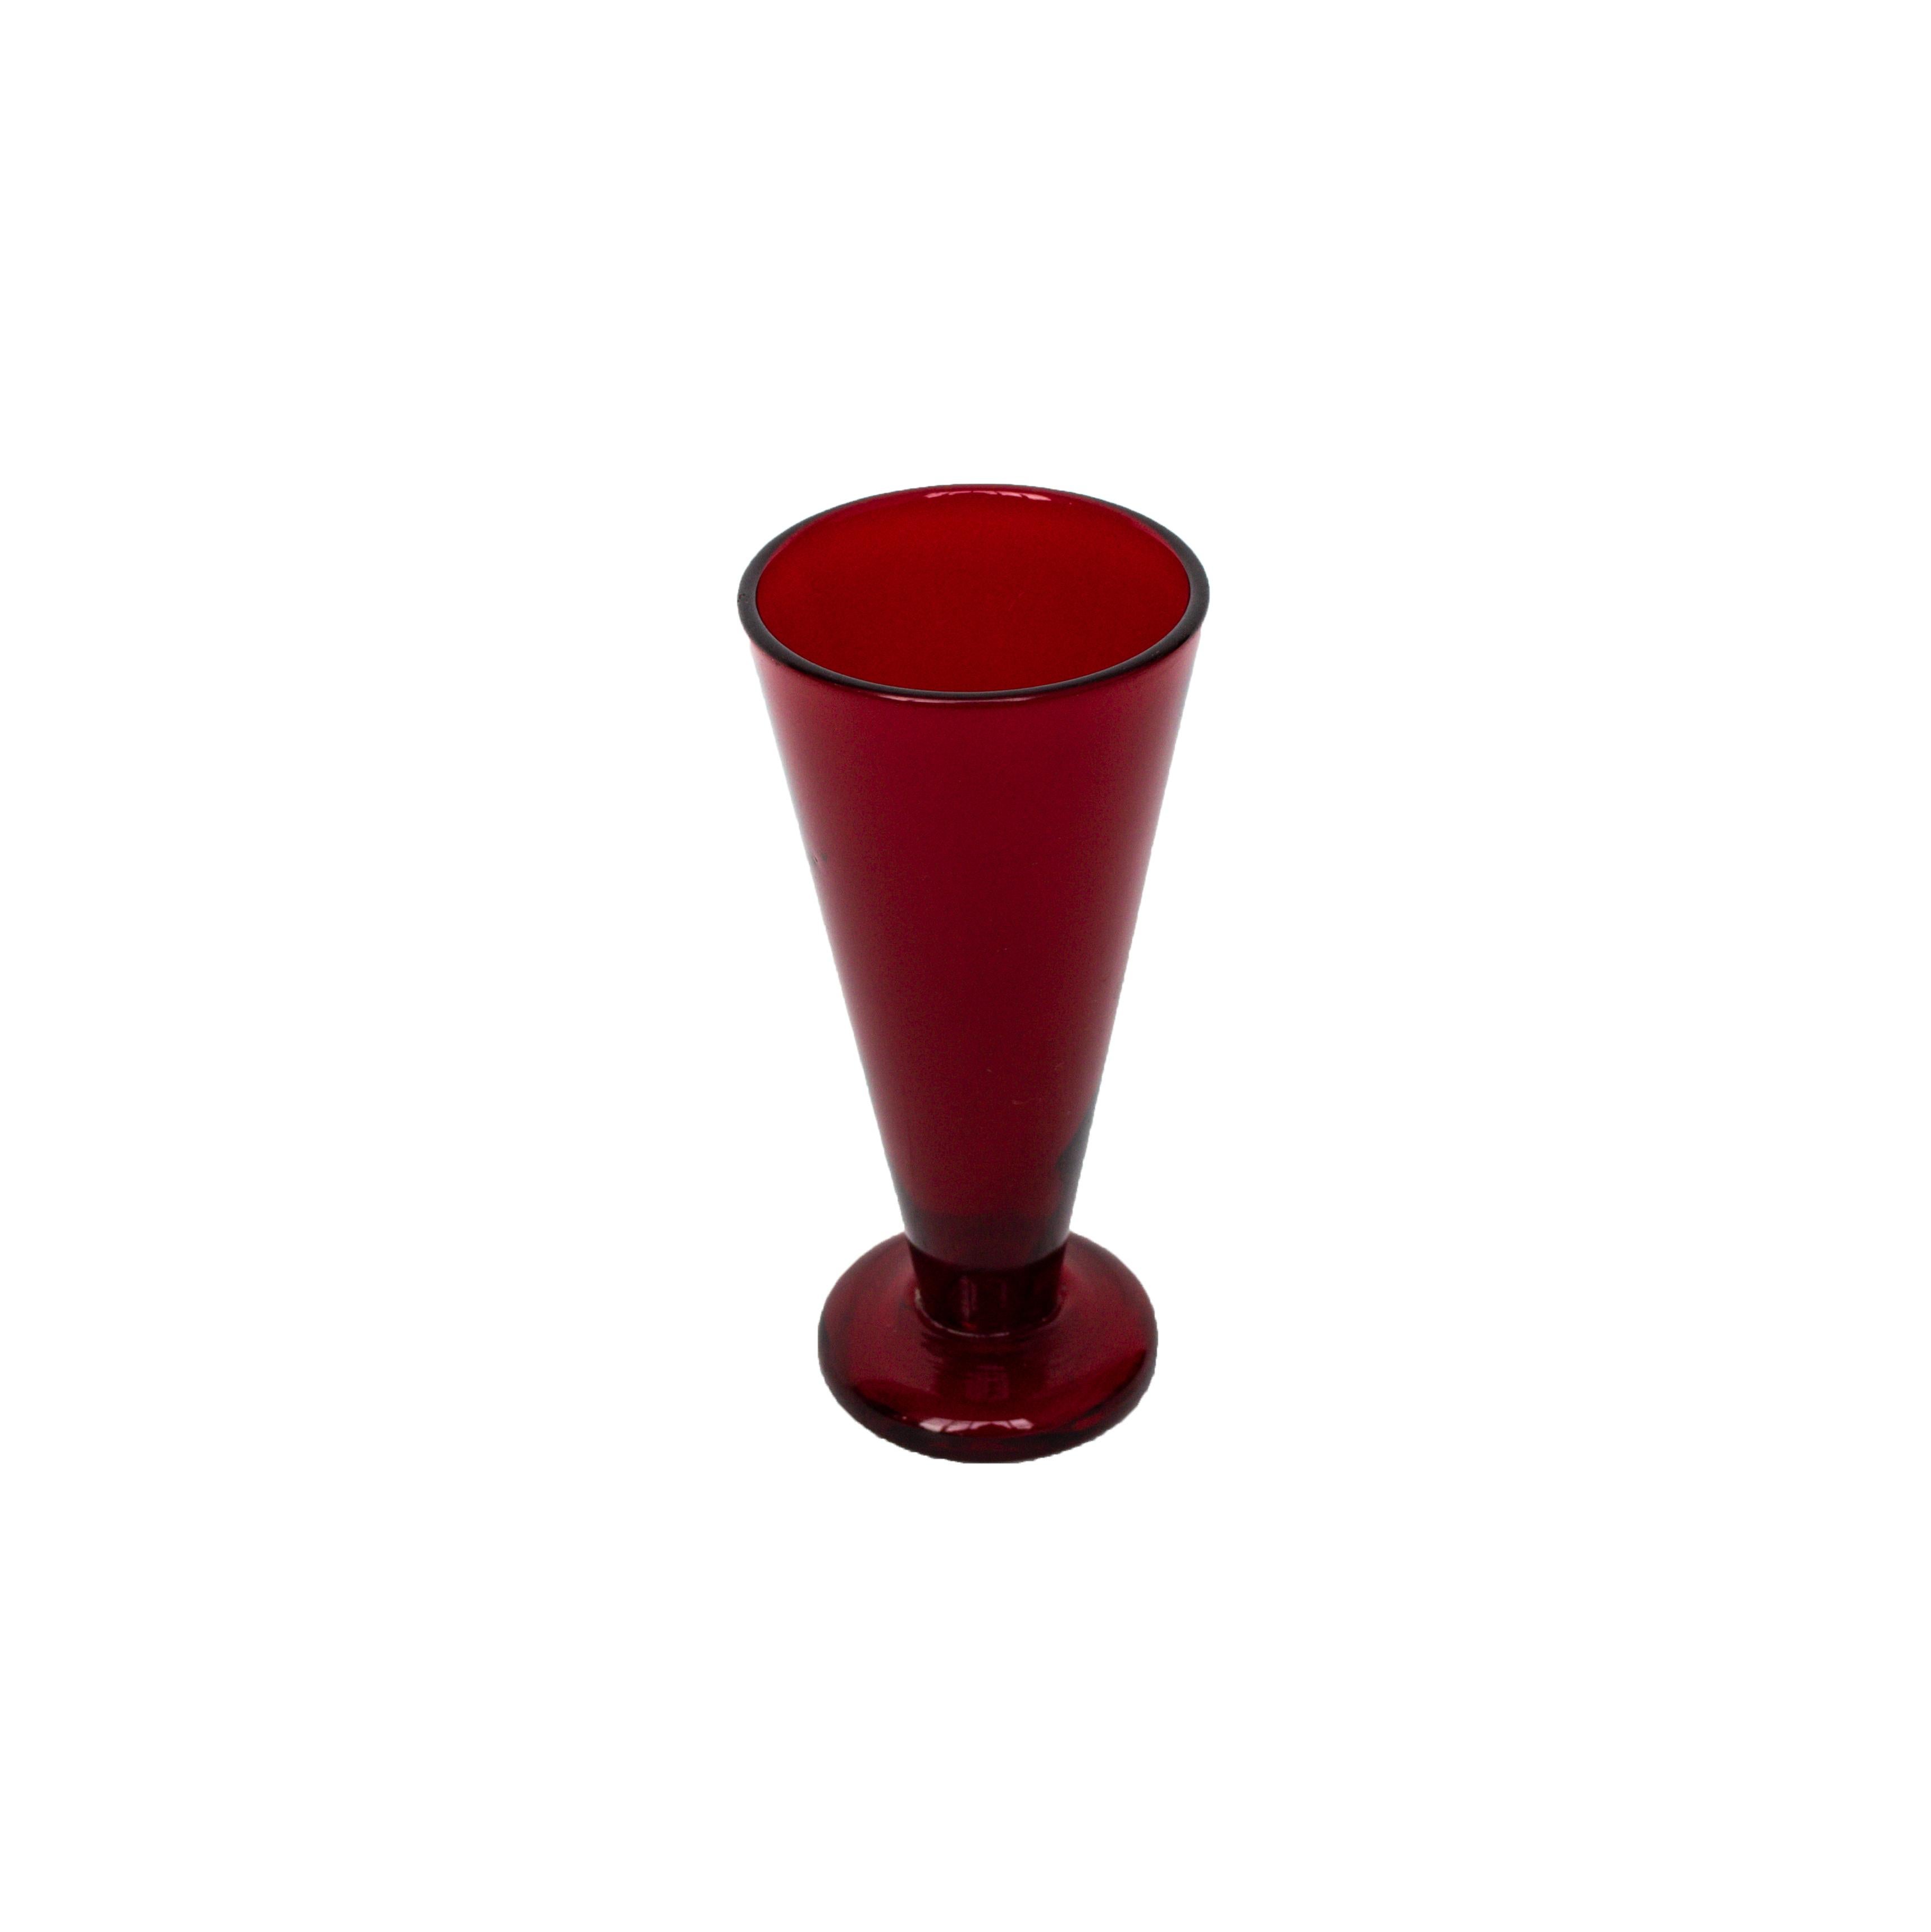 Mid-Century Modern Reijmyre Glas/Vase in Red Glass Designed by Monica Bratt for Reijmyre For Sale